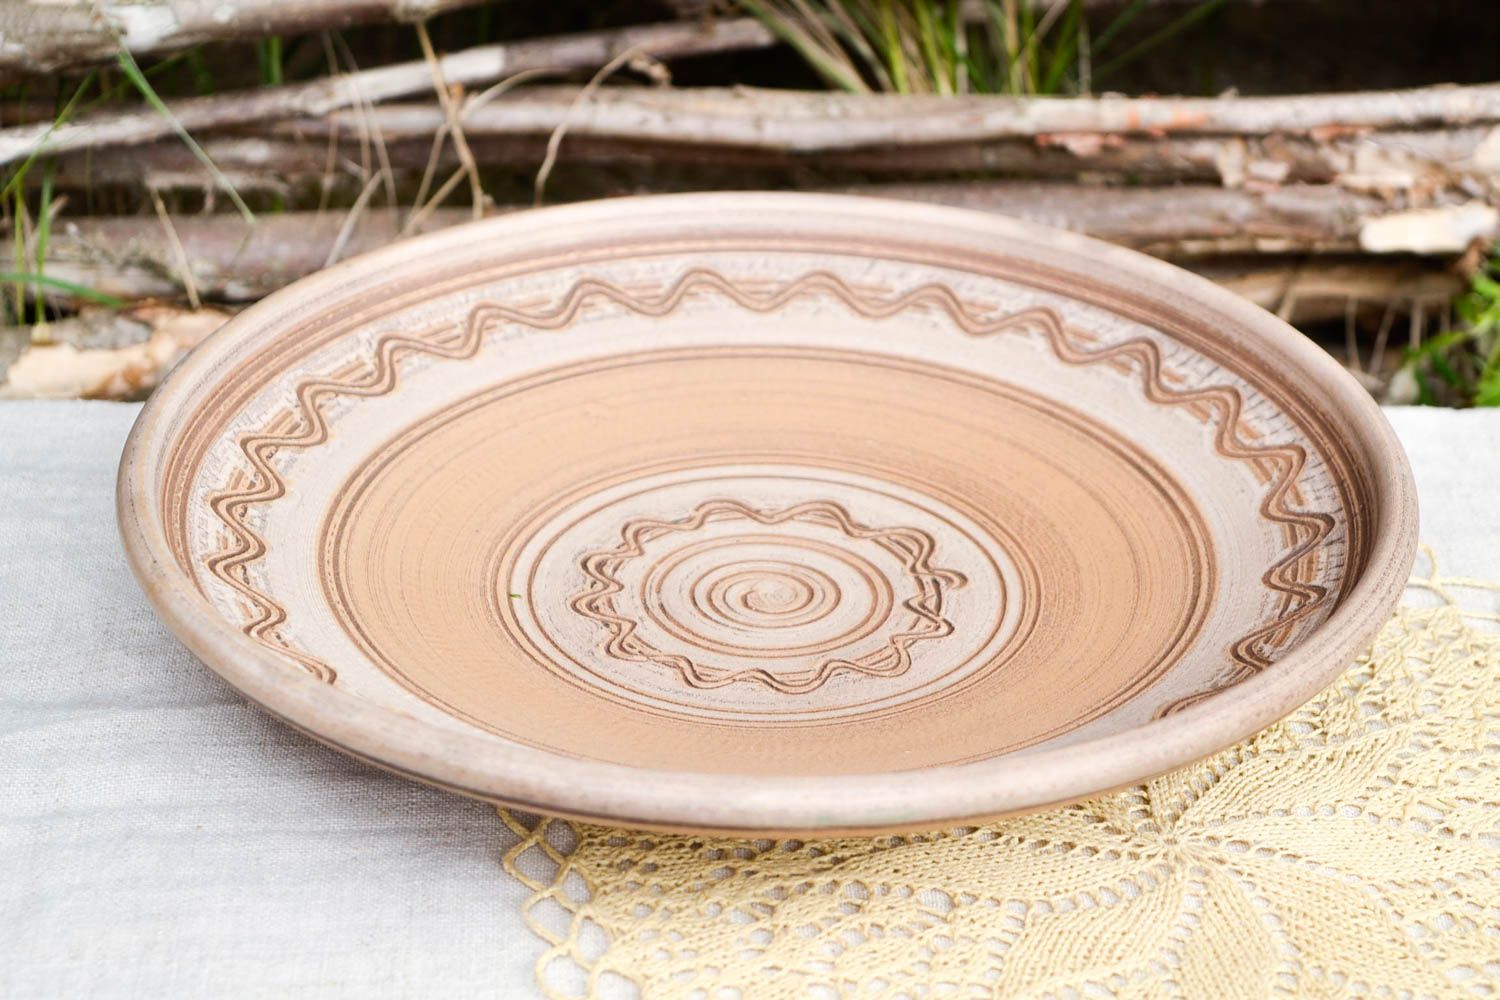 Тарелка из глины ручной работы расписная тарелка необычная столовая посуда фото 1